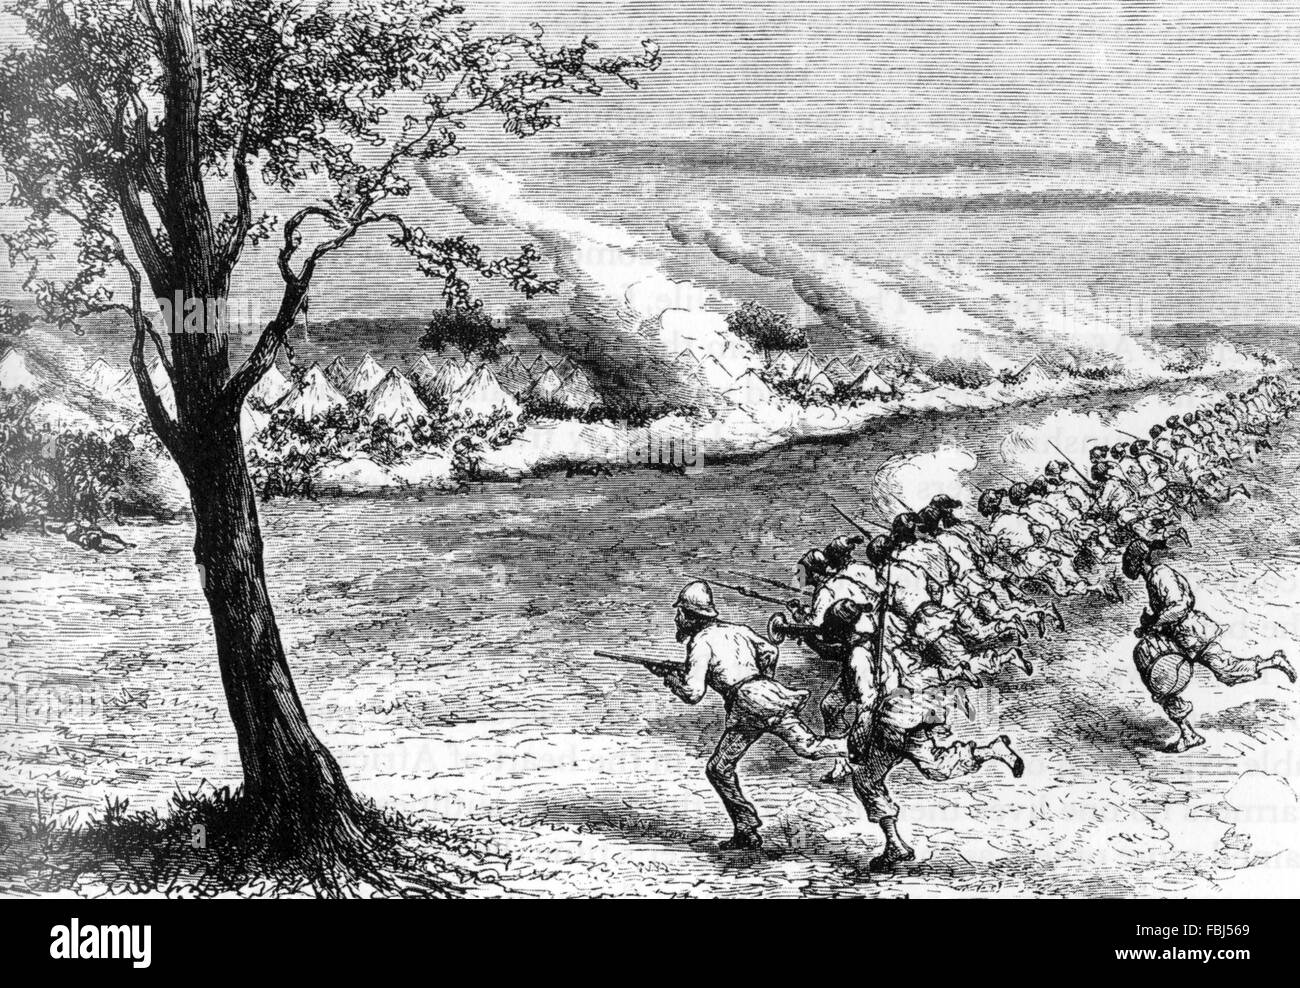 SAMUEL BAKER (1821-1893) explorateur britannique menant ses quarante voleurs lors d'une attaque contre les marchands d'esclaves à Fatiko durant la bataille de Masindi en 1872 Banque D'Images